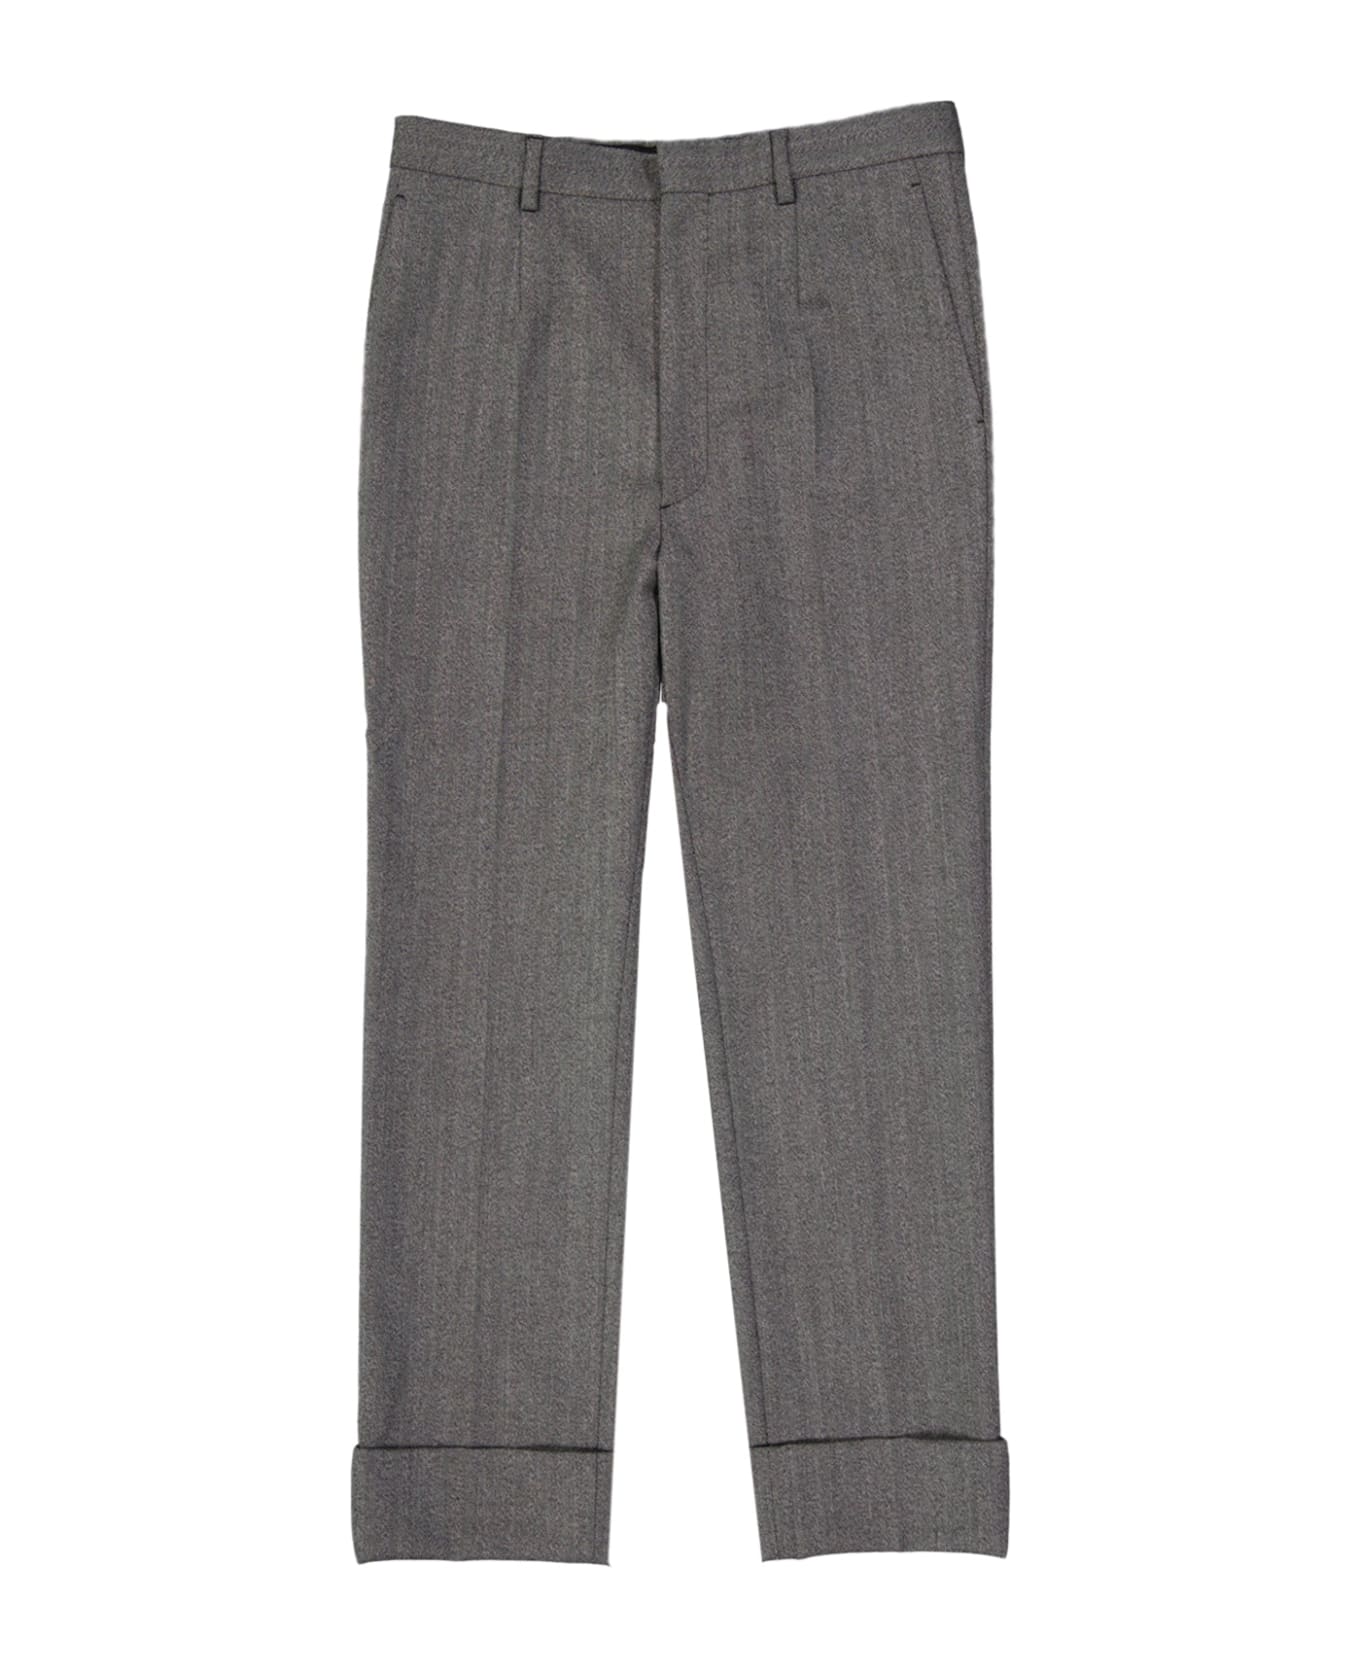 Prada Wool Pants - Gray ボトムス